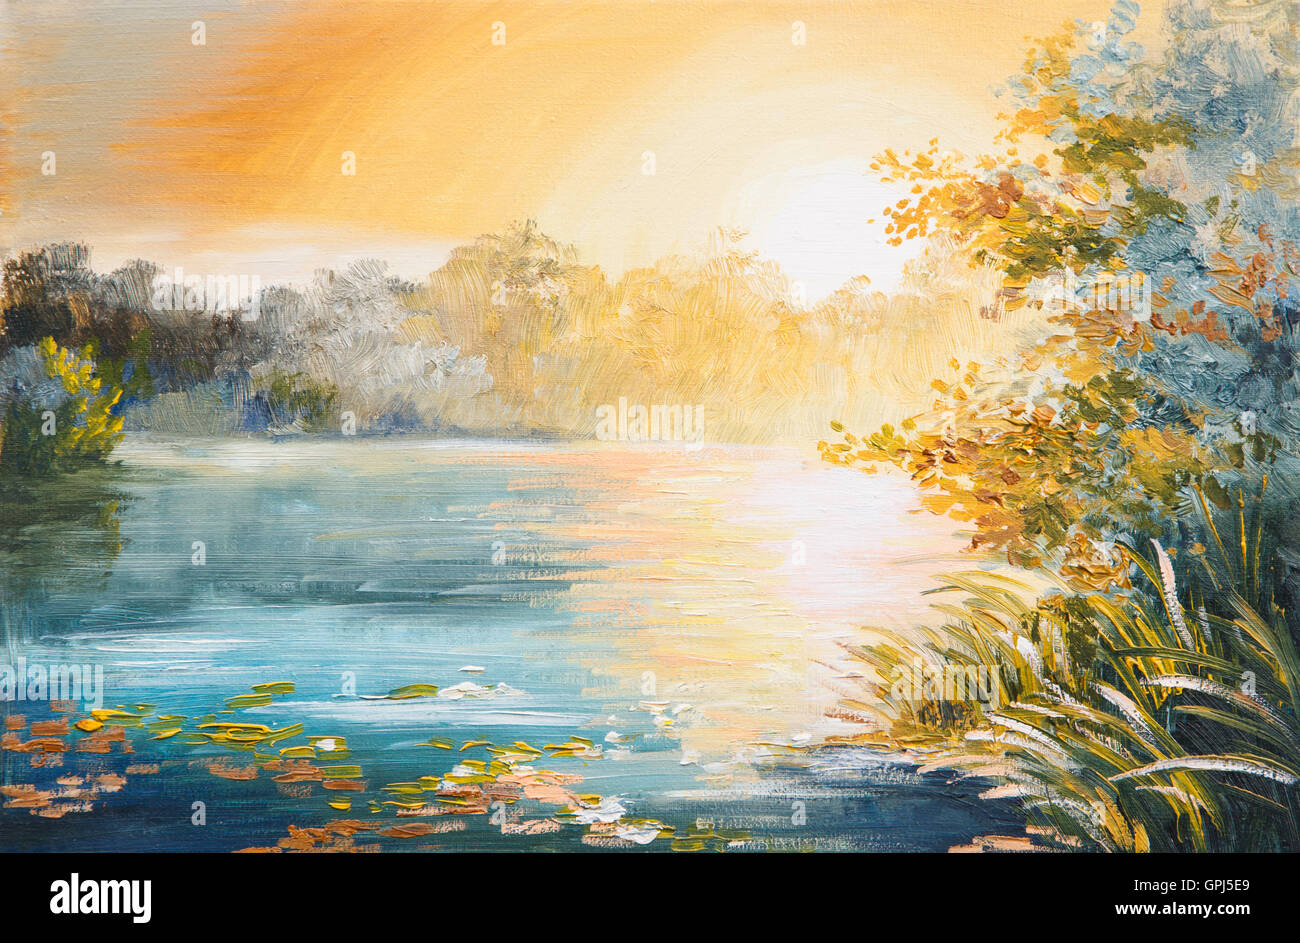 Peinture - coucher de soleil sur le lac, coucher de soleil lumineux Banque D'Images